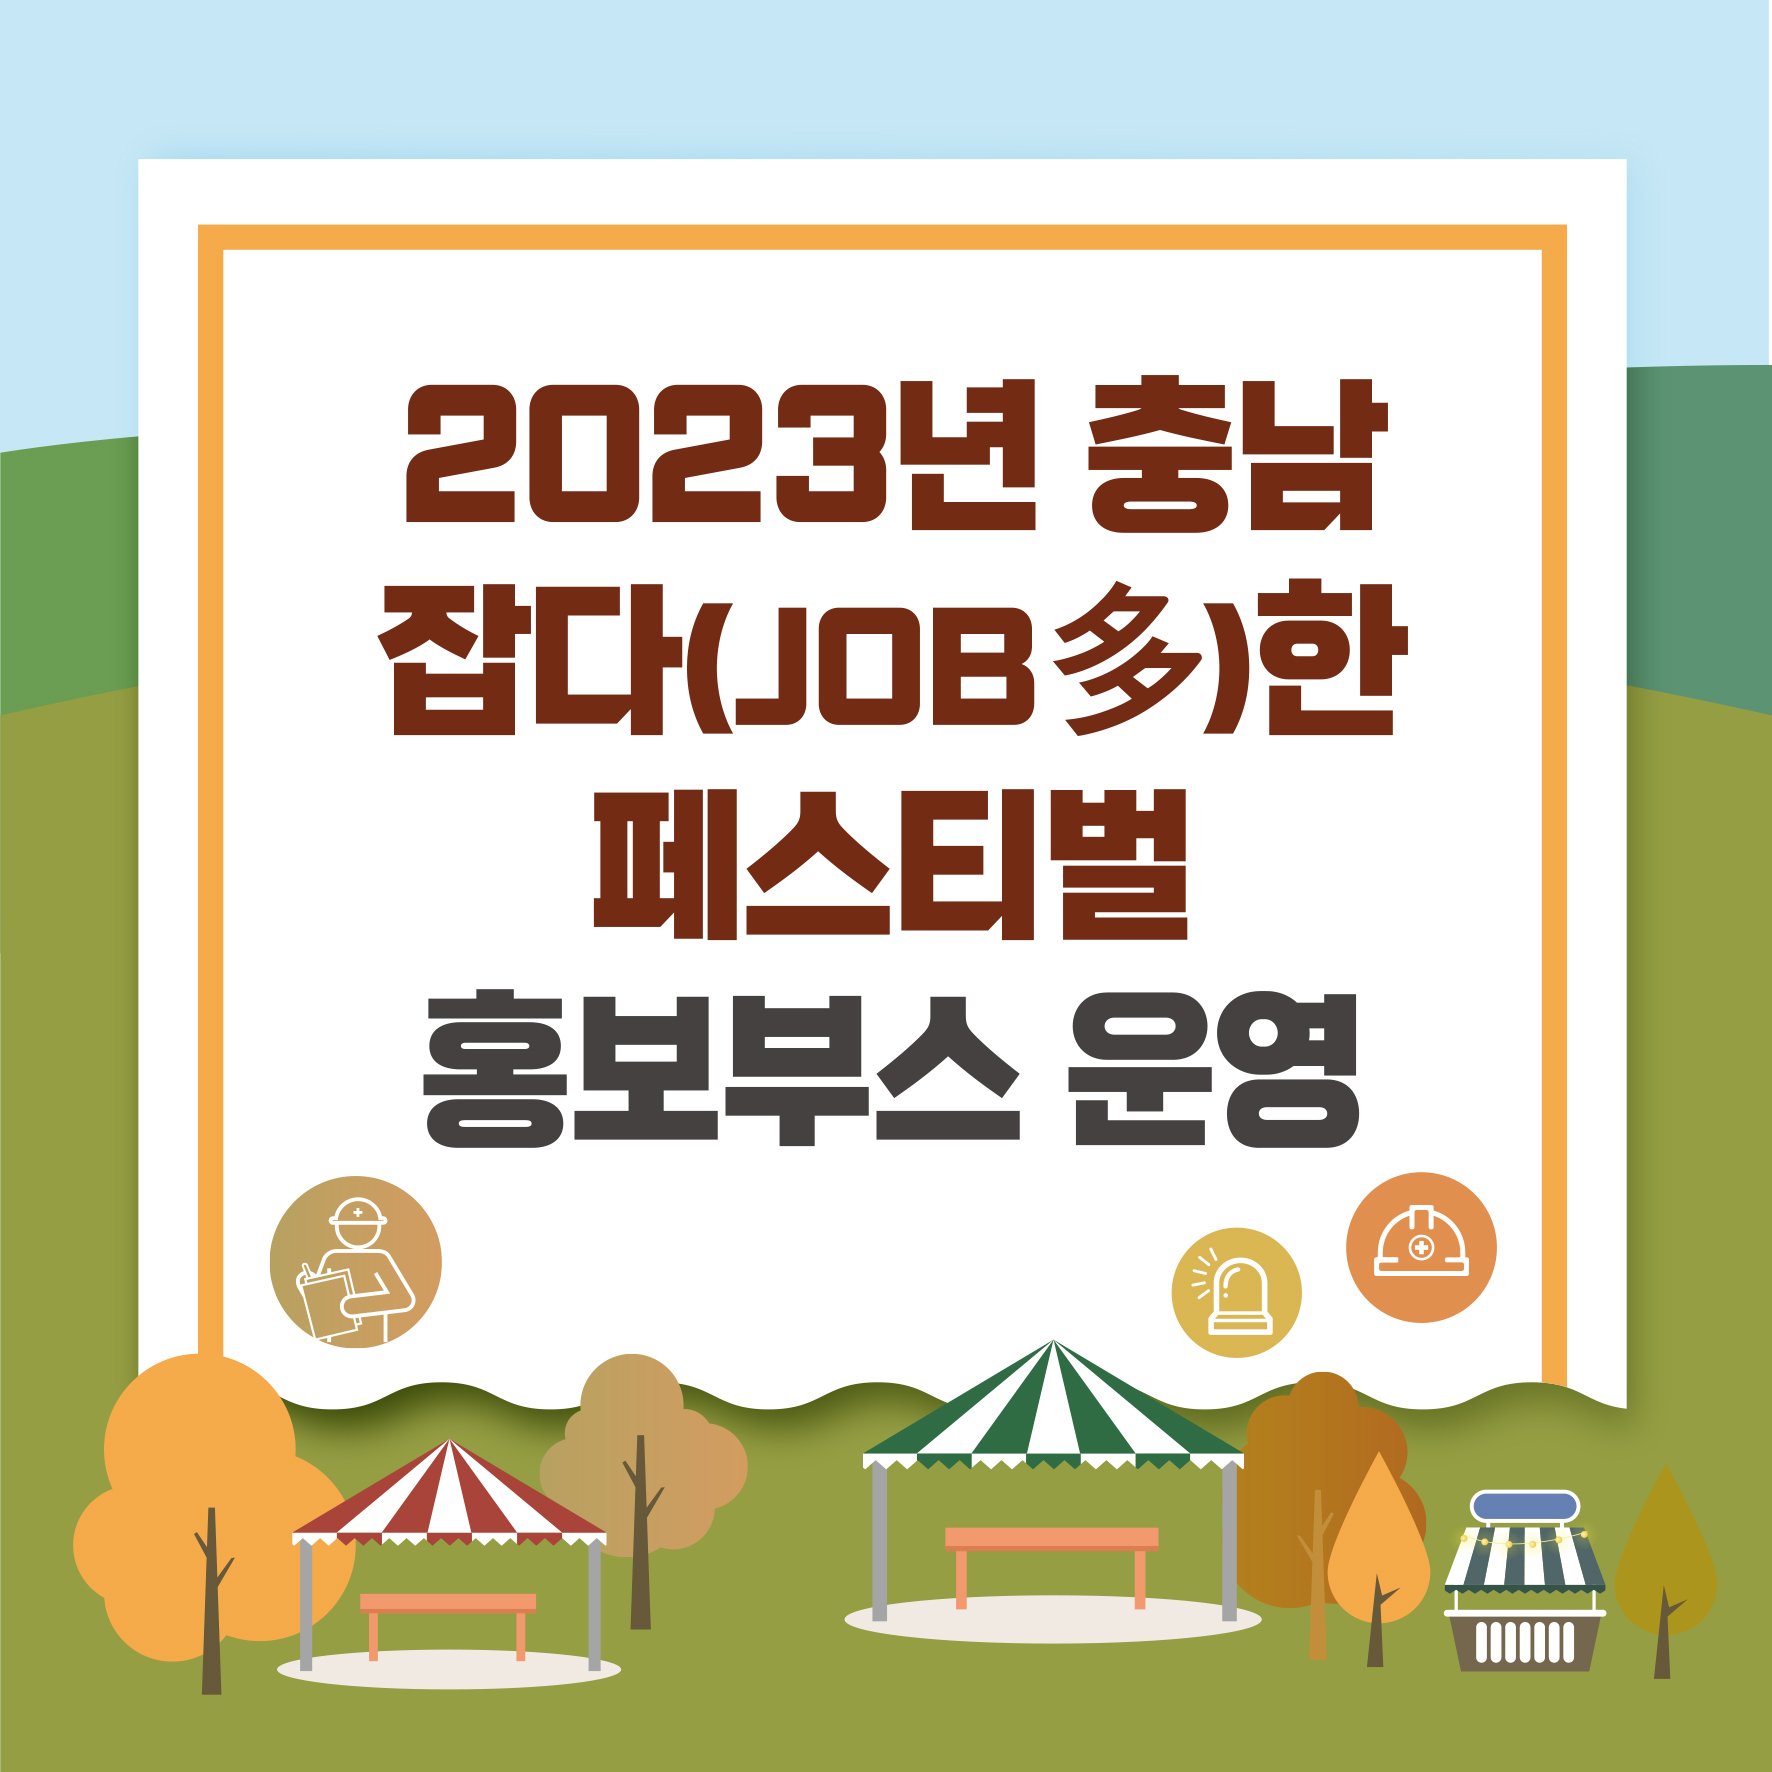 [천안] 2023년 충남 잡다(JOB多)한 페스티벌 홍보부스 운영